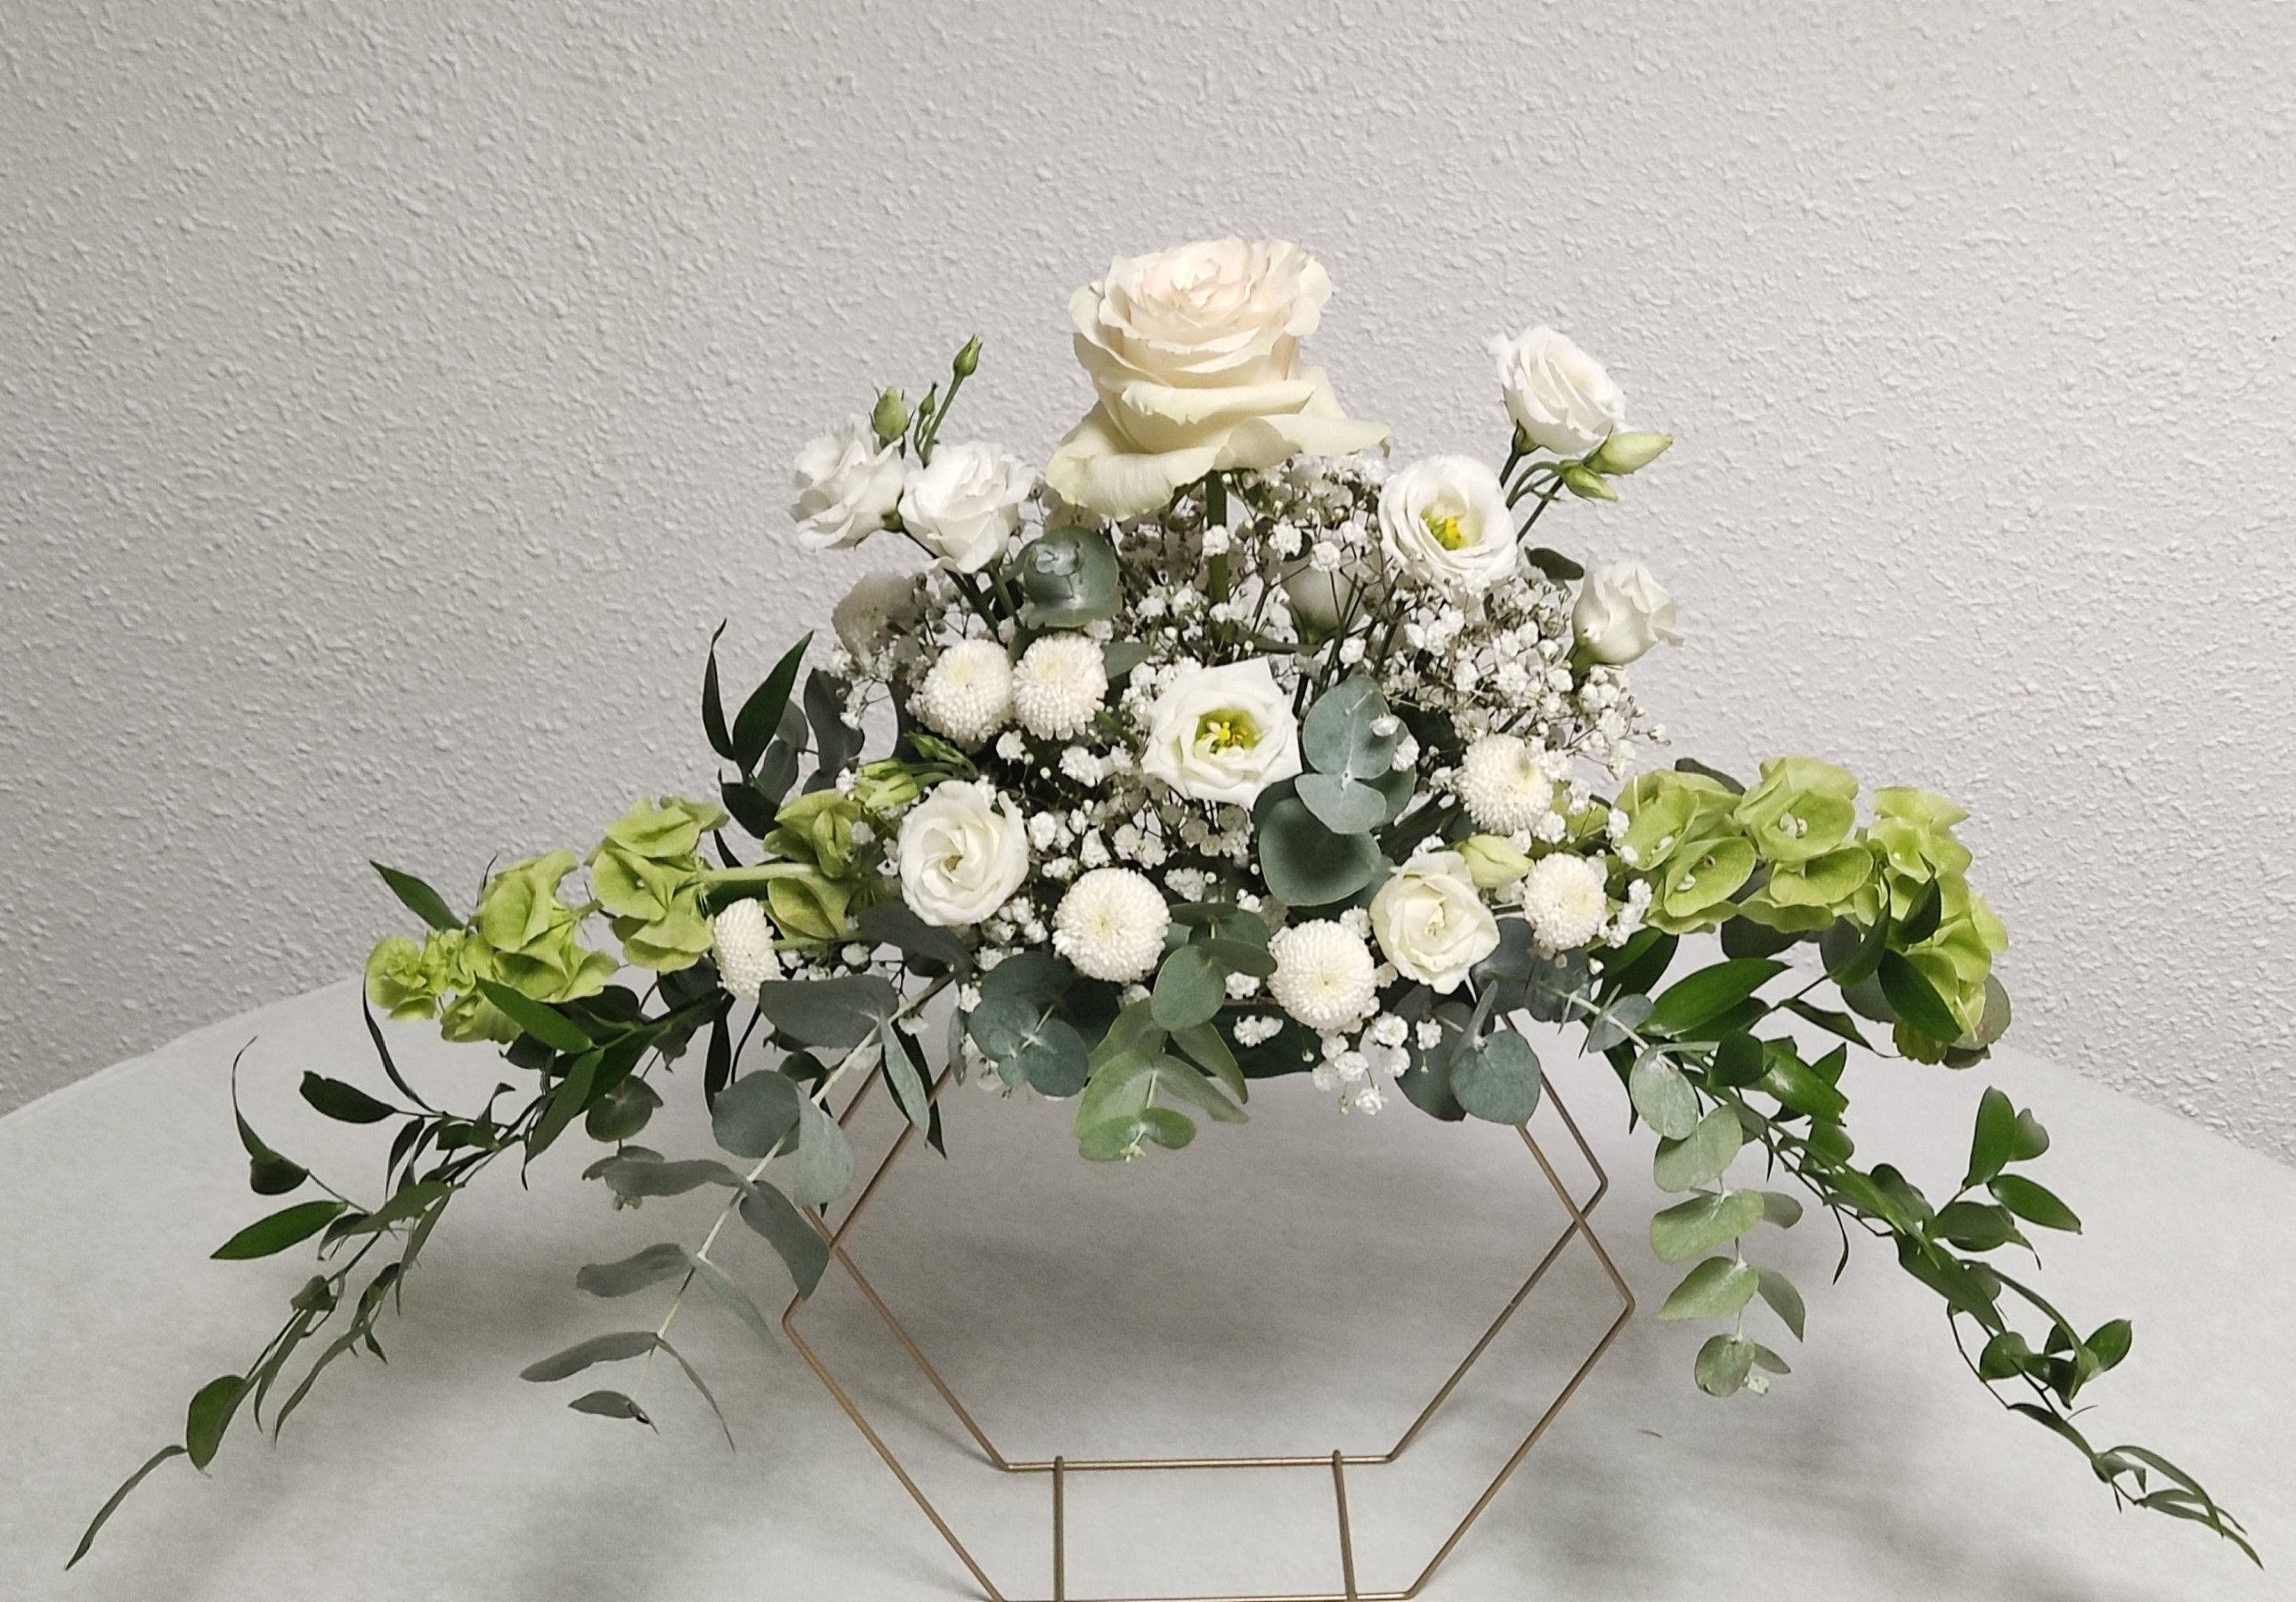 Structure métal or pour mariage, Centre de table pour mariage Moulin de Rudelle, mariage Auterive blanc et vert par fleuriste mariage A Fleur d'Art